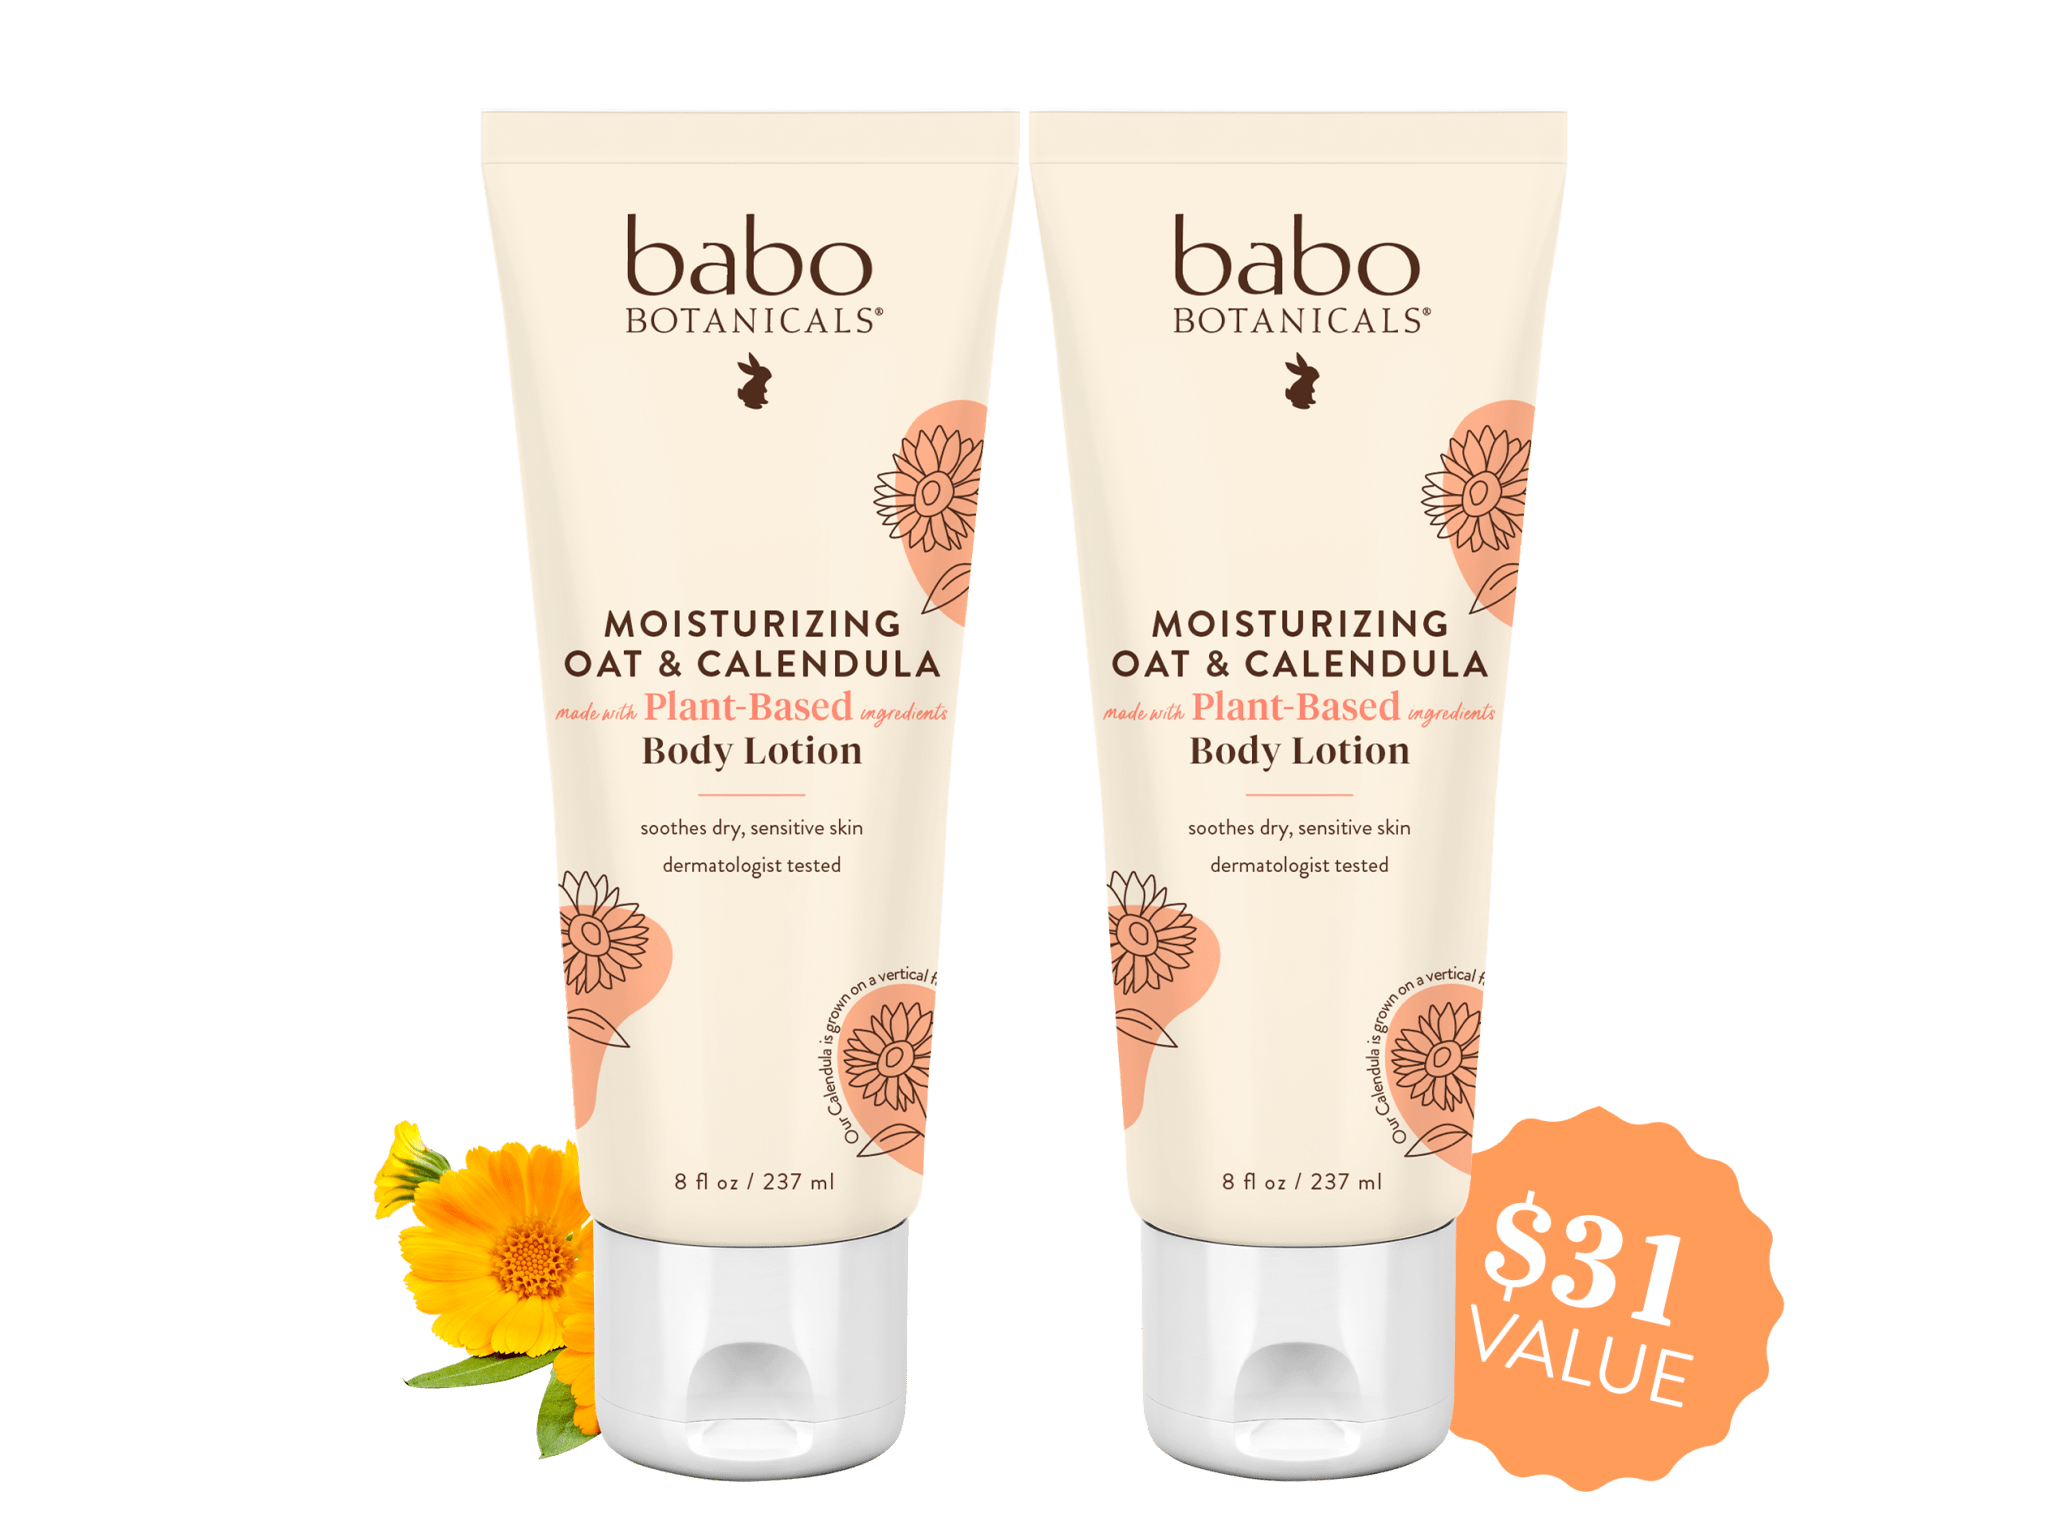 Babo botanicals- Moisturizing Oat & calendula body lotion duo- $31 value